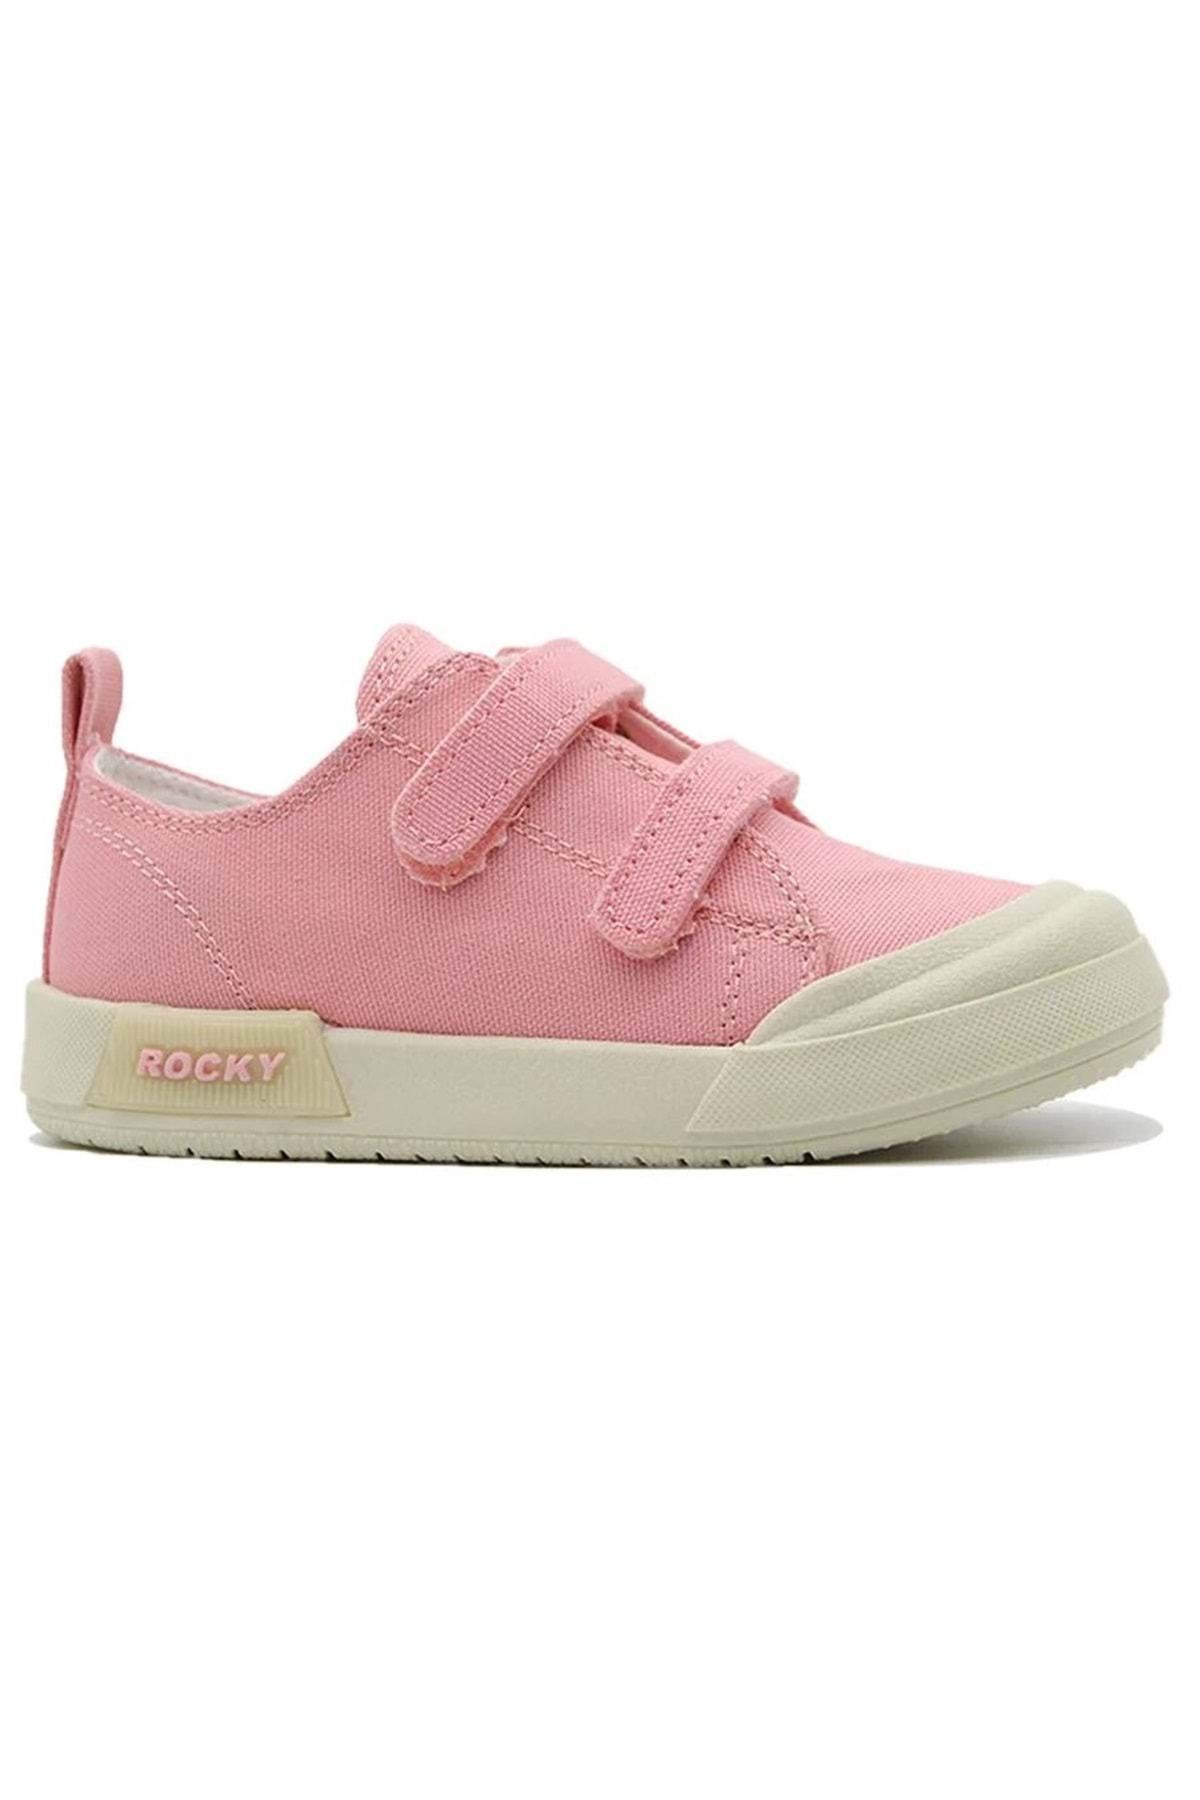 Kids Club Shoes Rocky 545 Keten Sneakers Ortapedik Çocuk Spor Ayakkabı Pembe